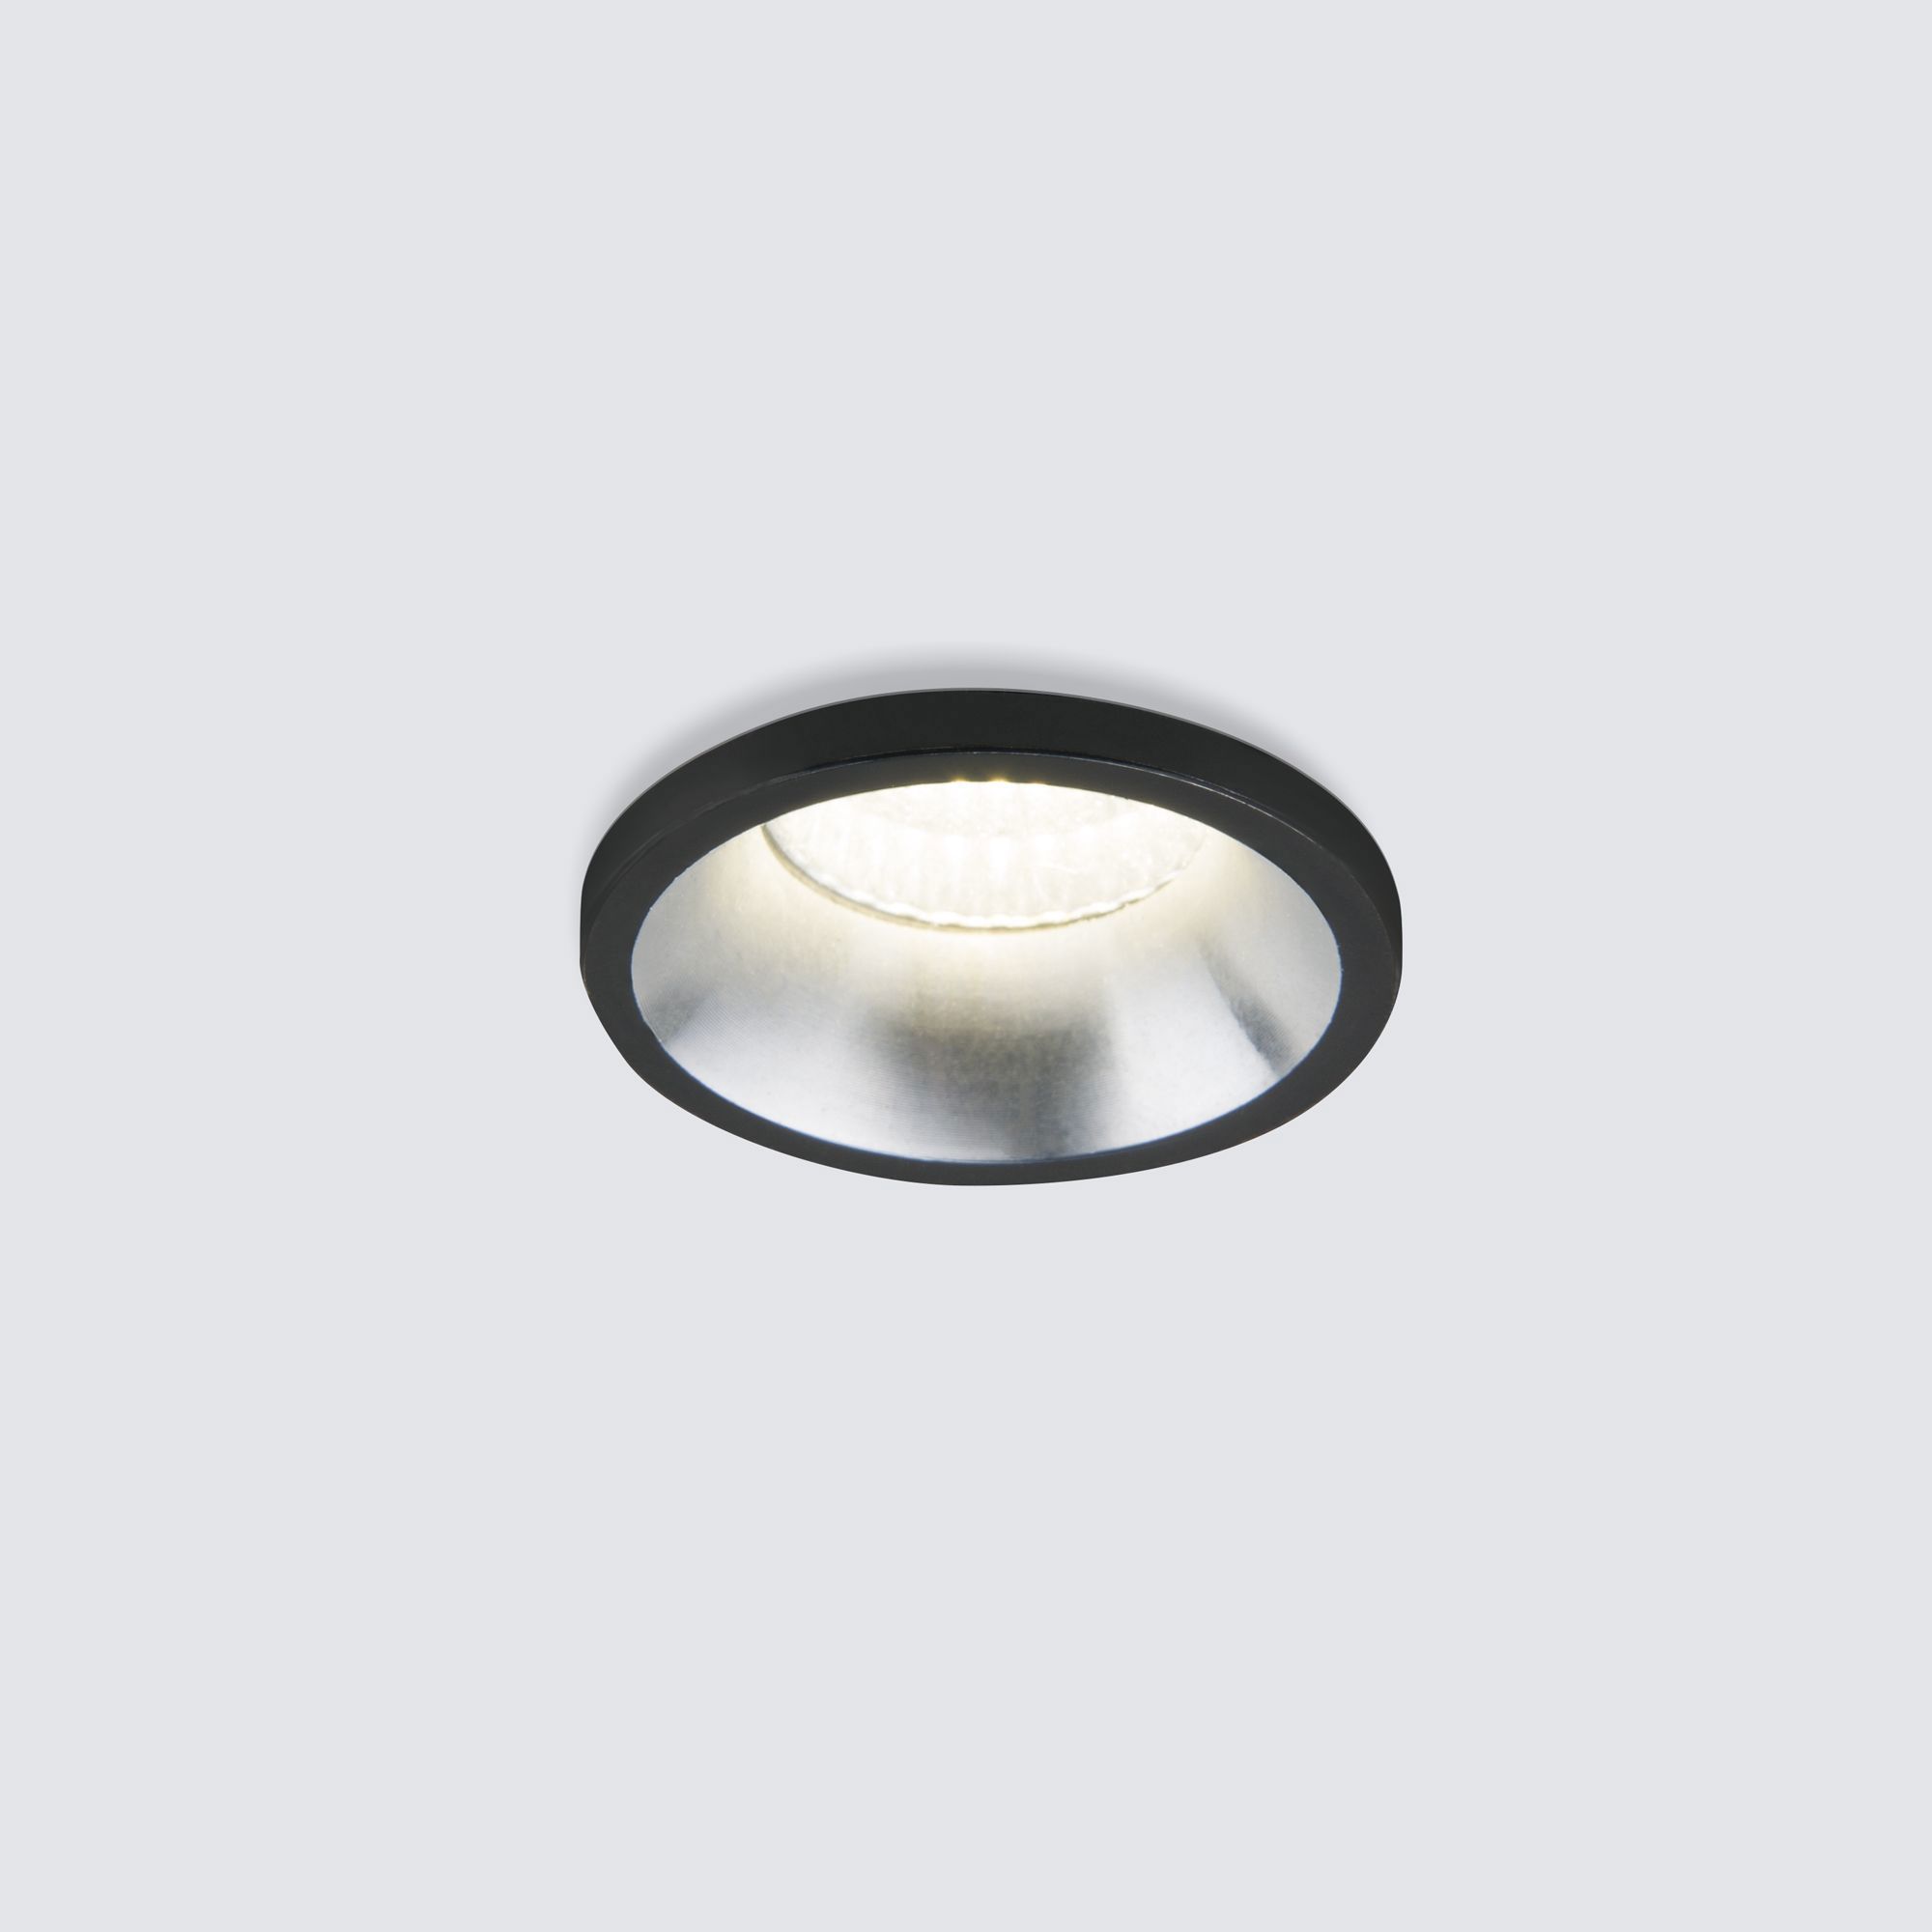 90286838 Светильник точечный светодиодный встраиваемый 15269/LED под отверстие 280 мм 1 м² нейтральный белый свет цвет черный STLM-0169568 ELEKTROSTANDARD